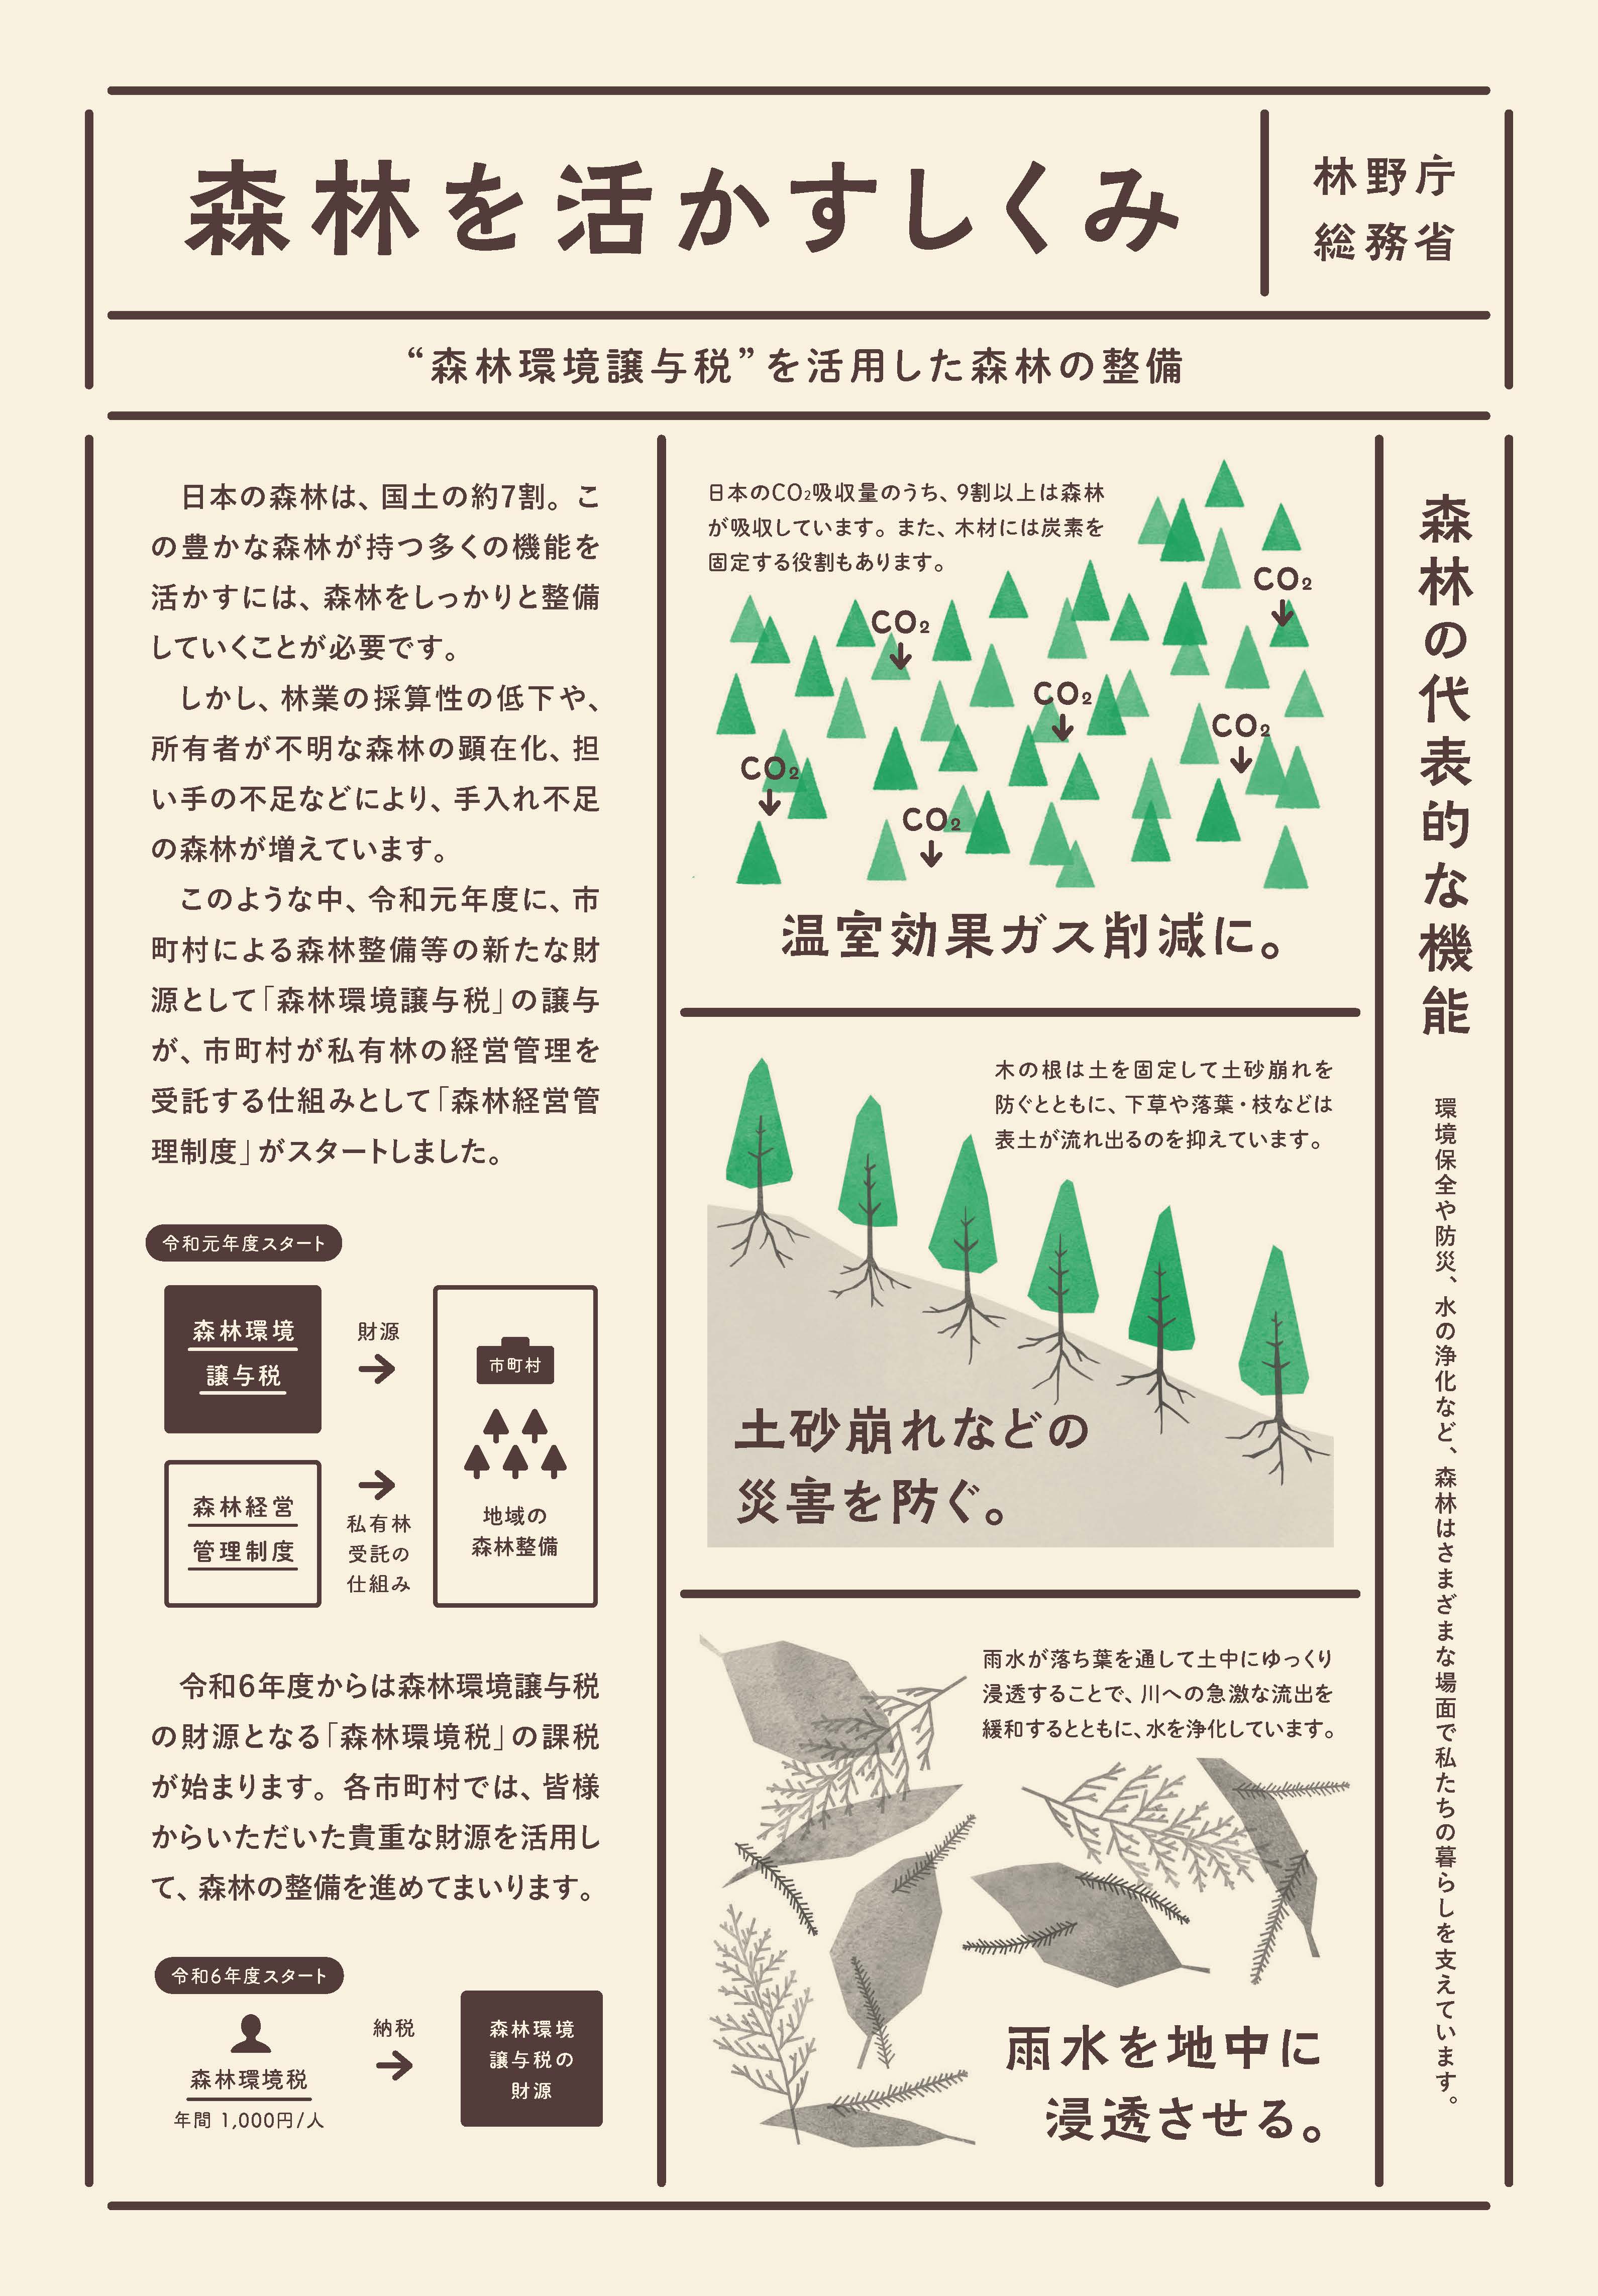 森林環境譲与税を活用した自治体の取組の紹介 Vol.3 東京都千代田区